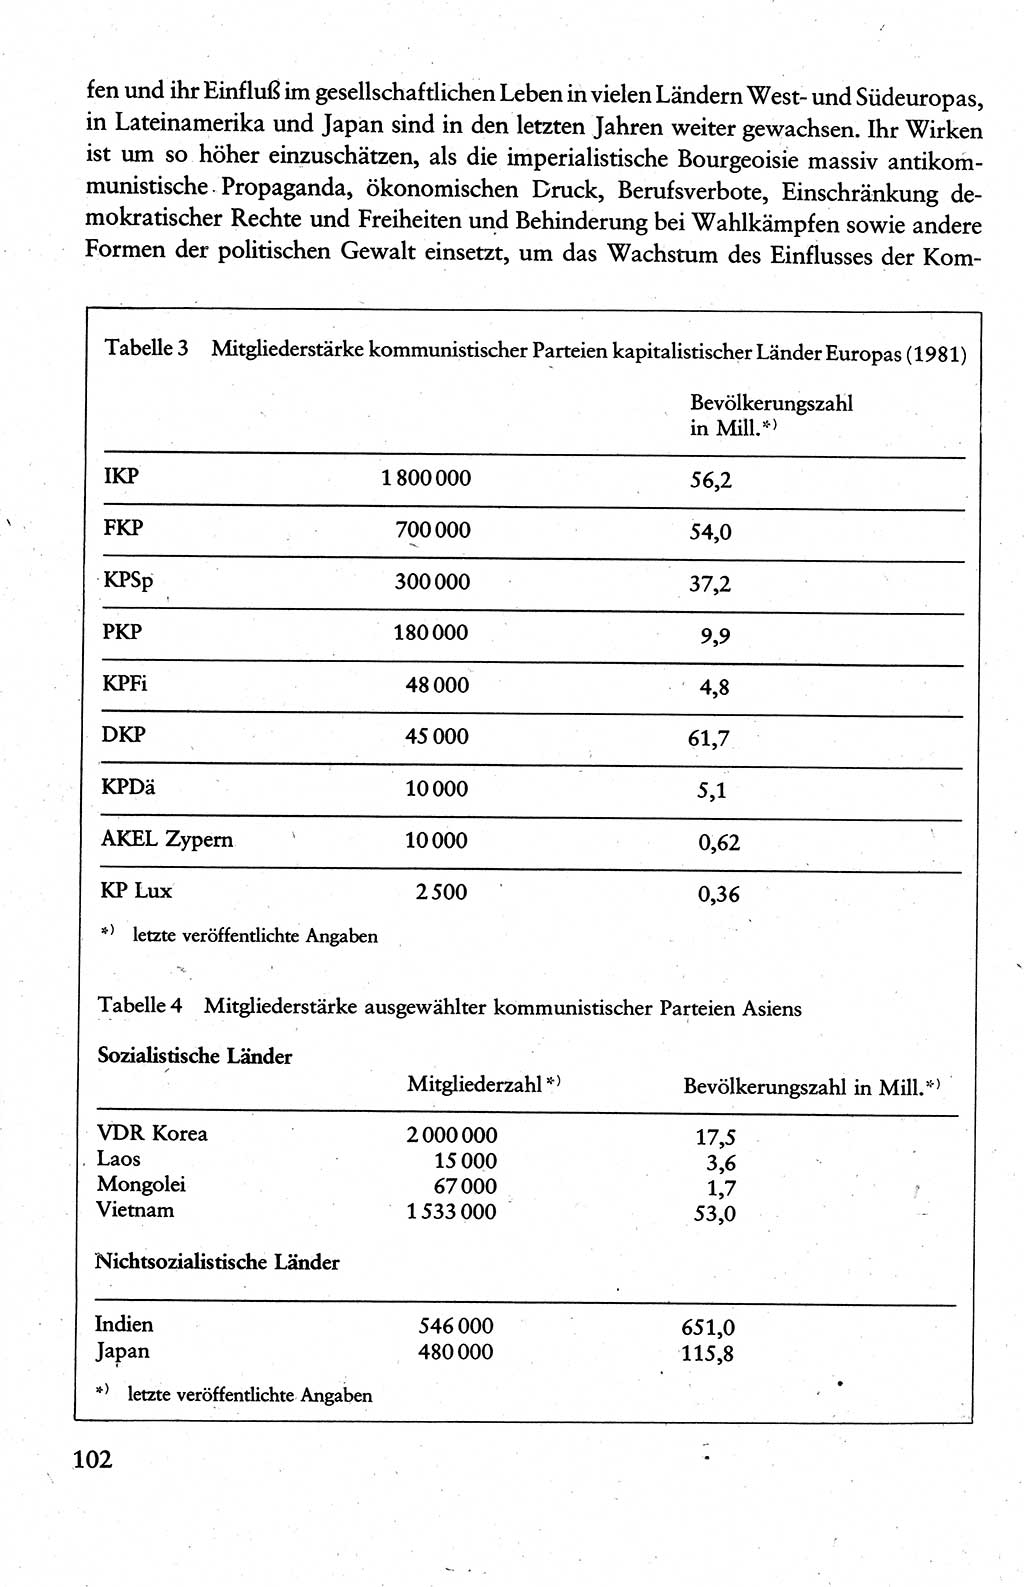 Wissenschaftlicher Kommunismus [Deutsche Demokratische Republik (DDR)], Lehrbuch für das marxistisch-leninistische Grundlagenstudium 1983, Seite 102 (Wiss. Komm. DDR Lb. 1983, S. 102)